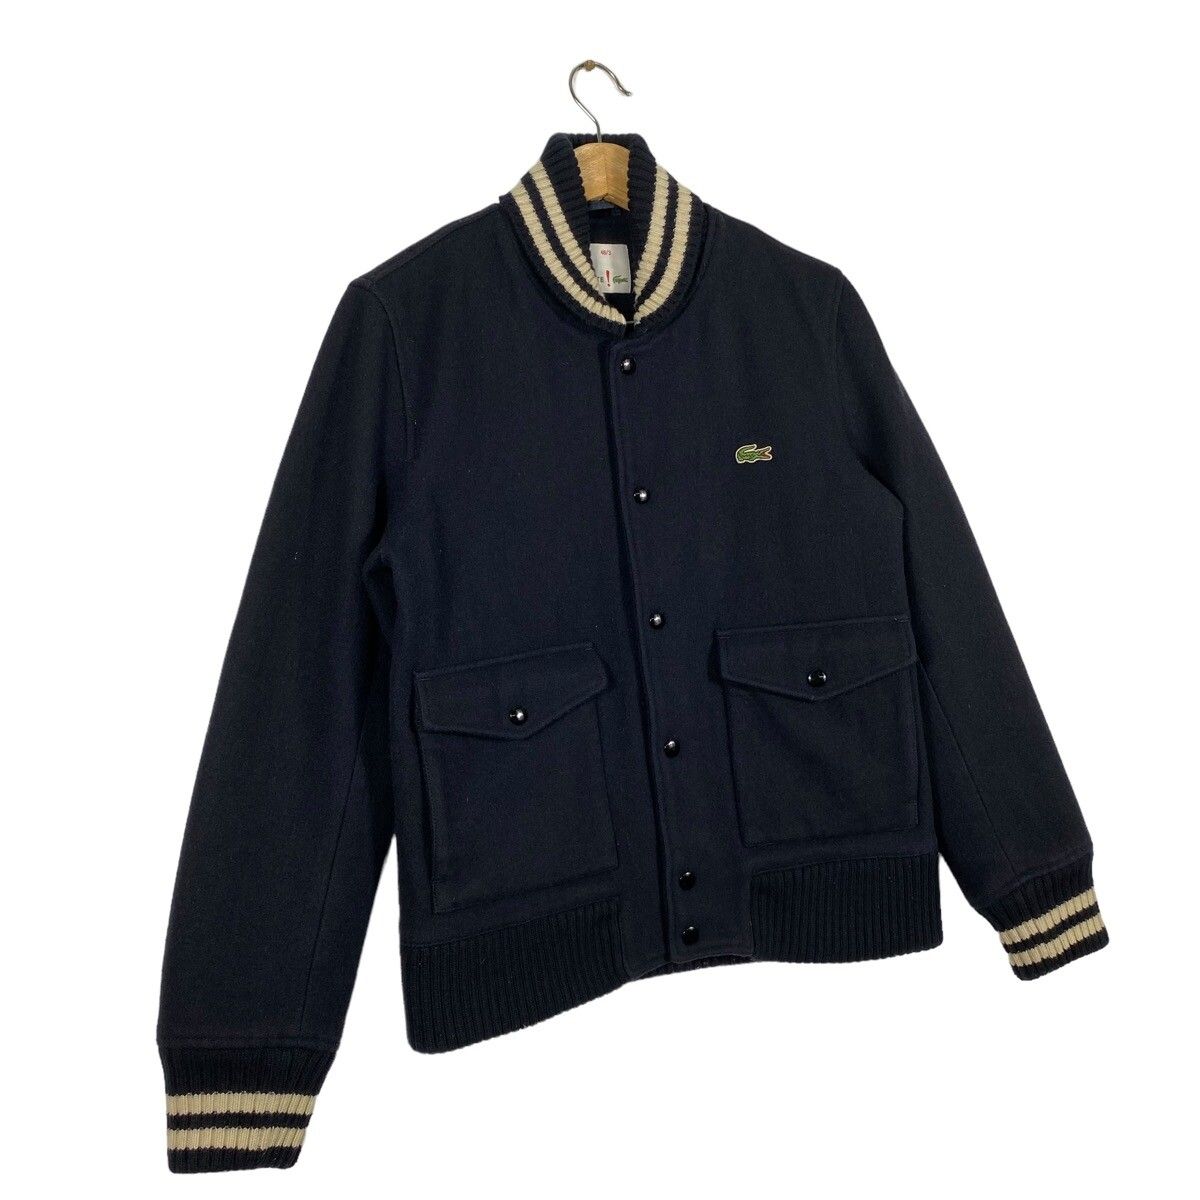 Vintage Lacoste Varsity Bomber Wool Jacket Size 48/3 (M) - 2